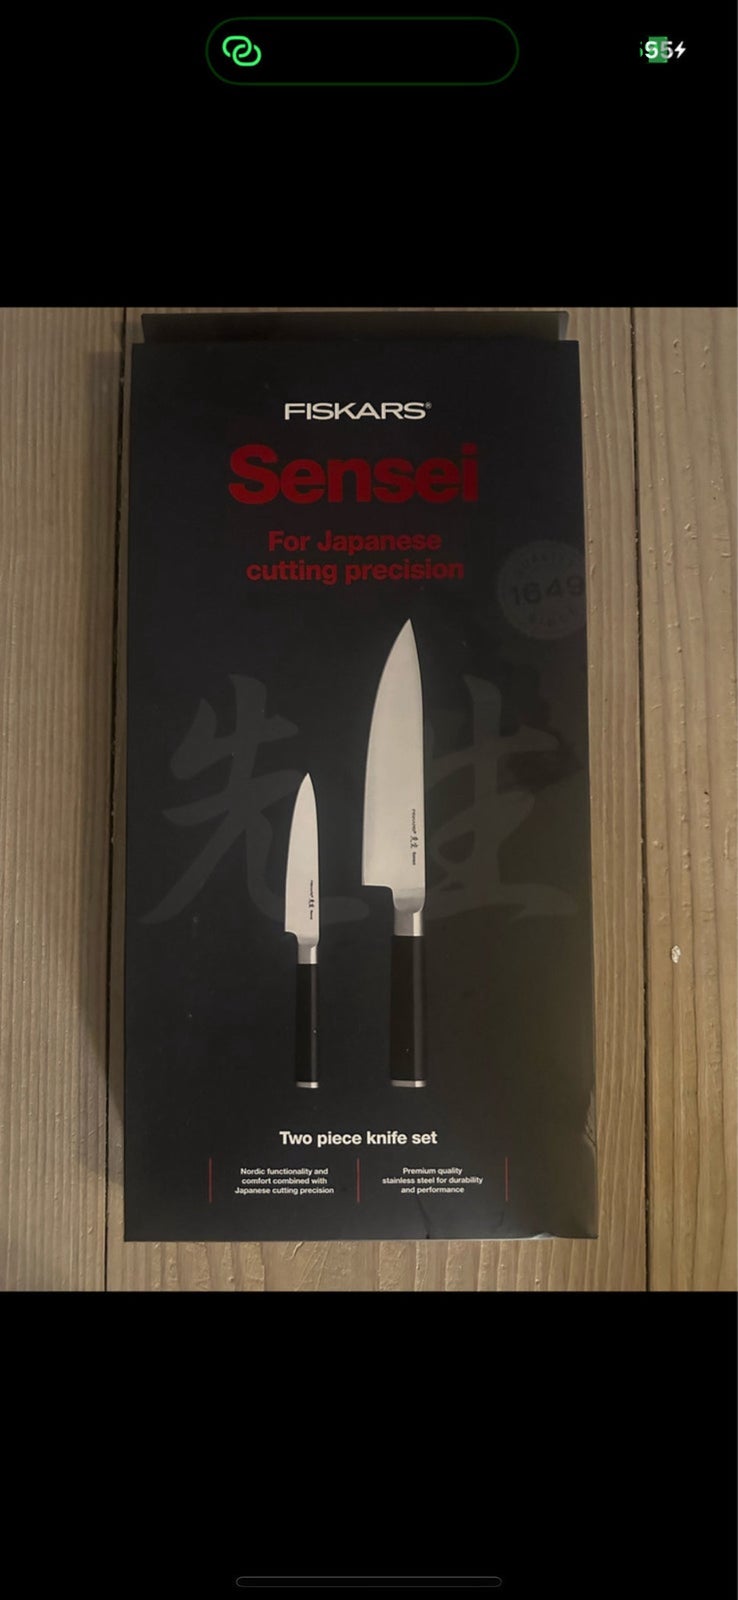 Sensei knive, Fiskars